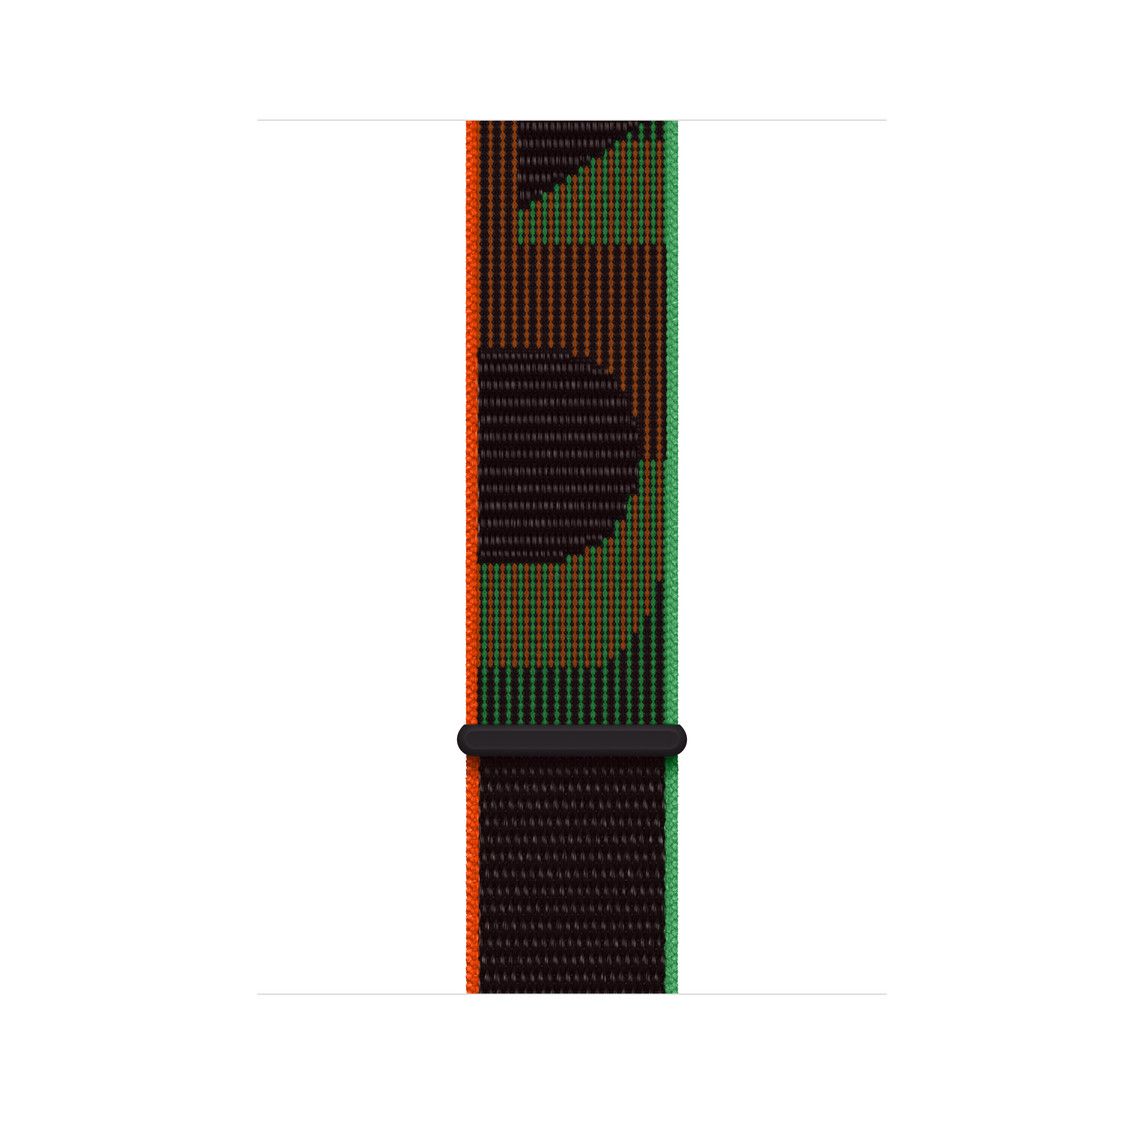 Cinturino Sport Loop Black Unity, nylon intrecciato nero con la parola “unity” in rosso e verde, chiusura hook-and-loop